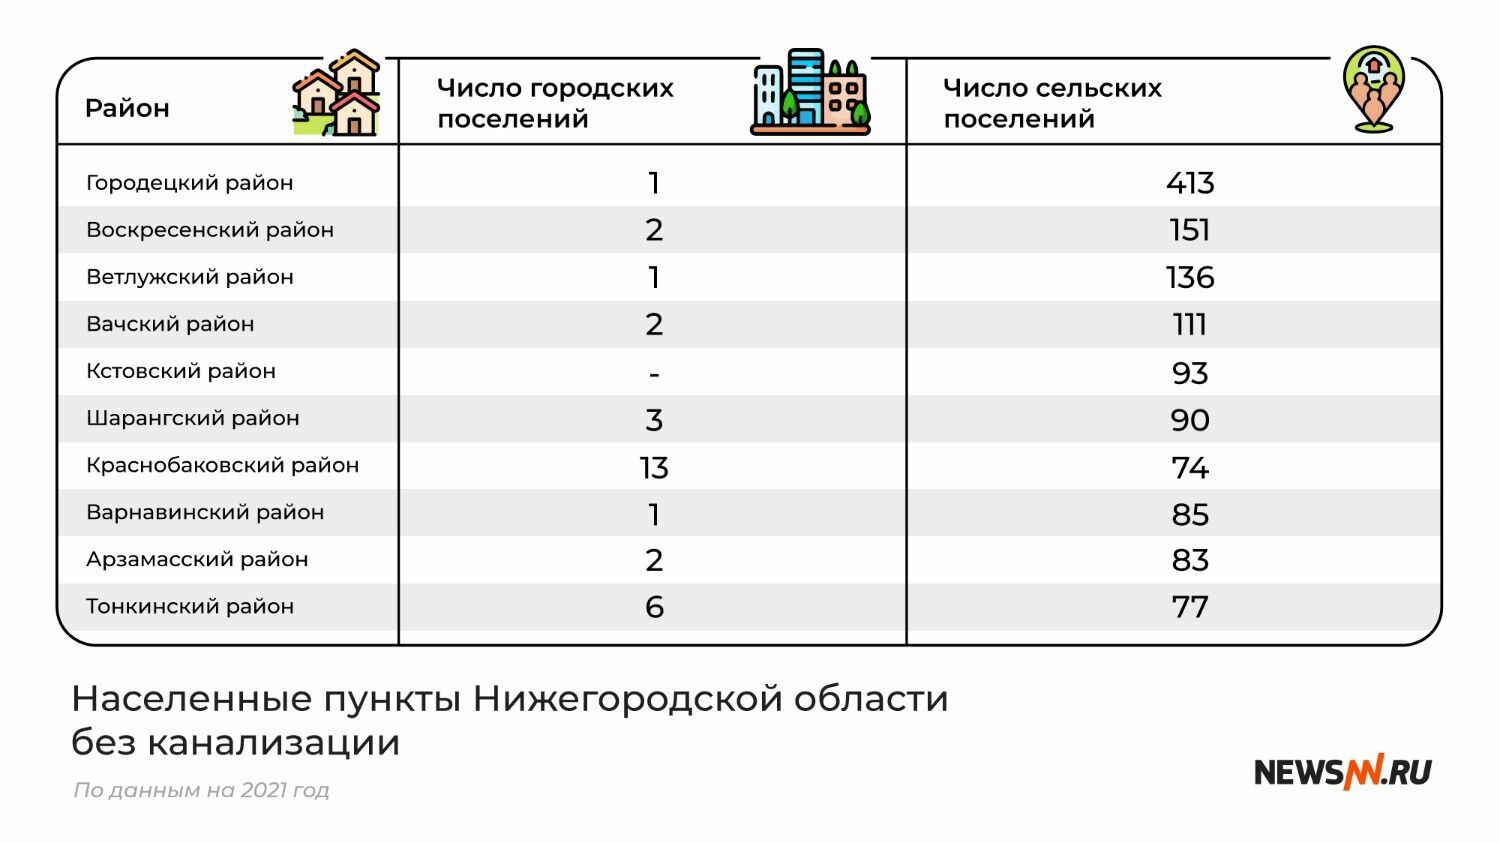 Населенные пункты Нижегородской области без канализации